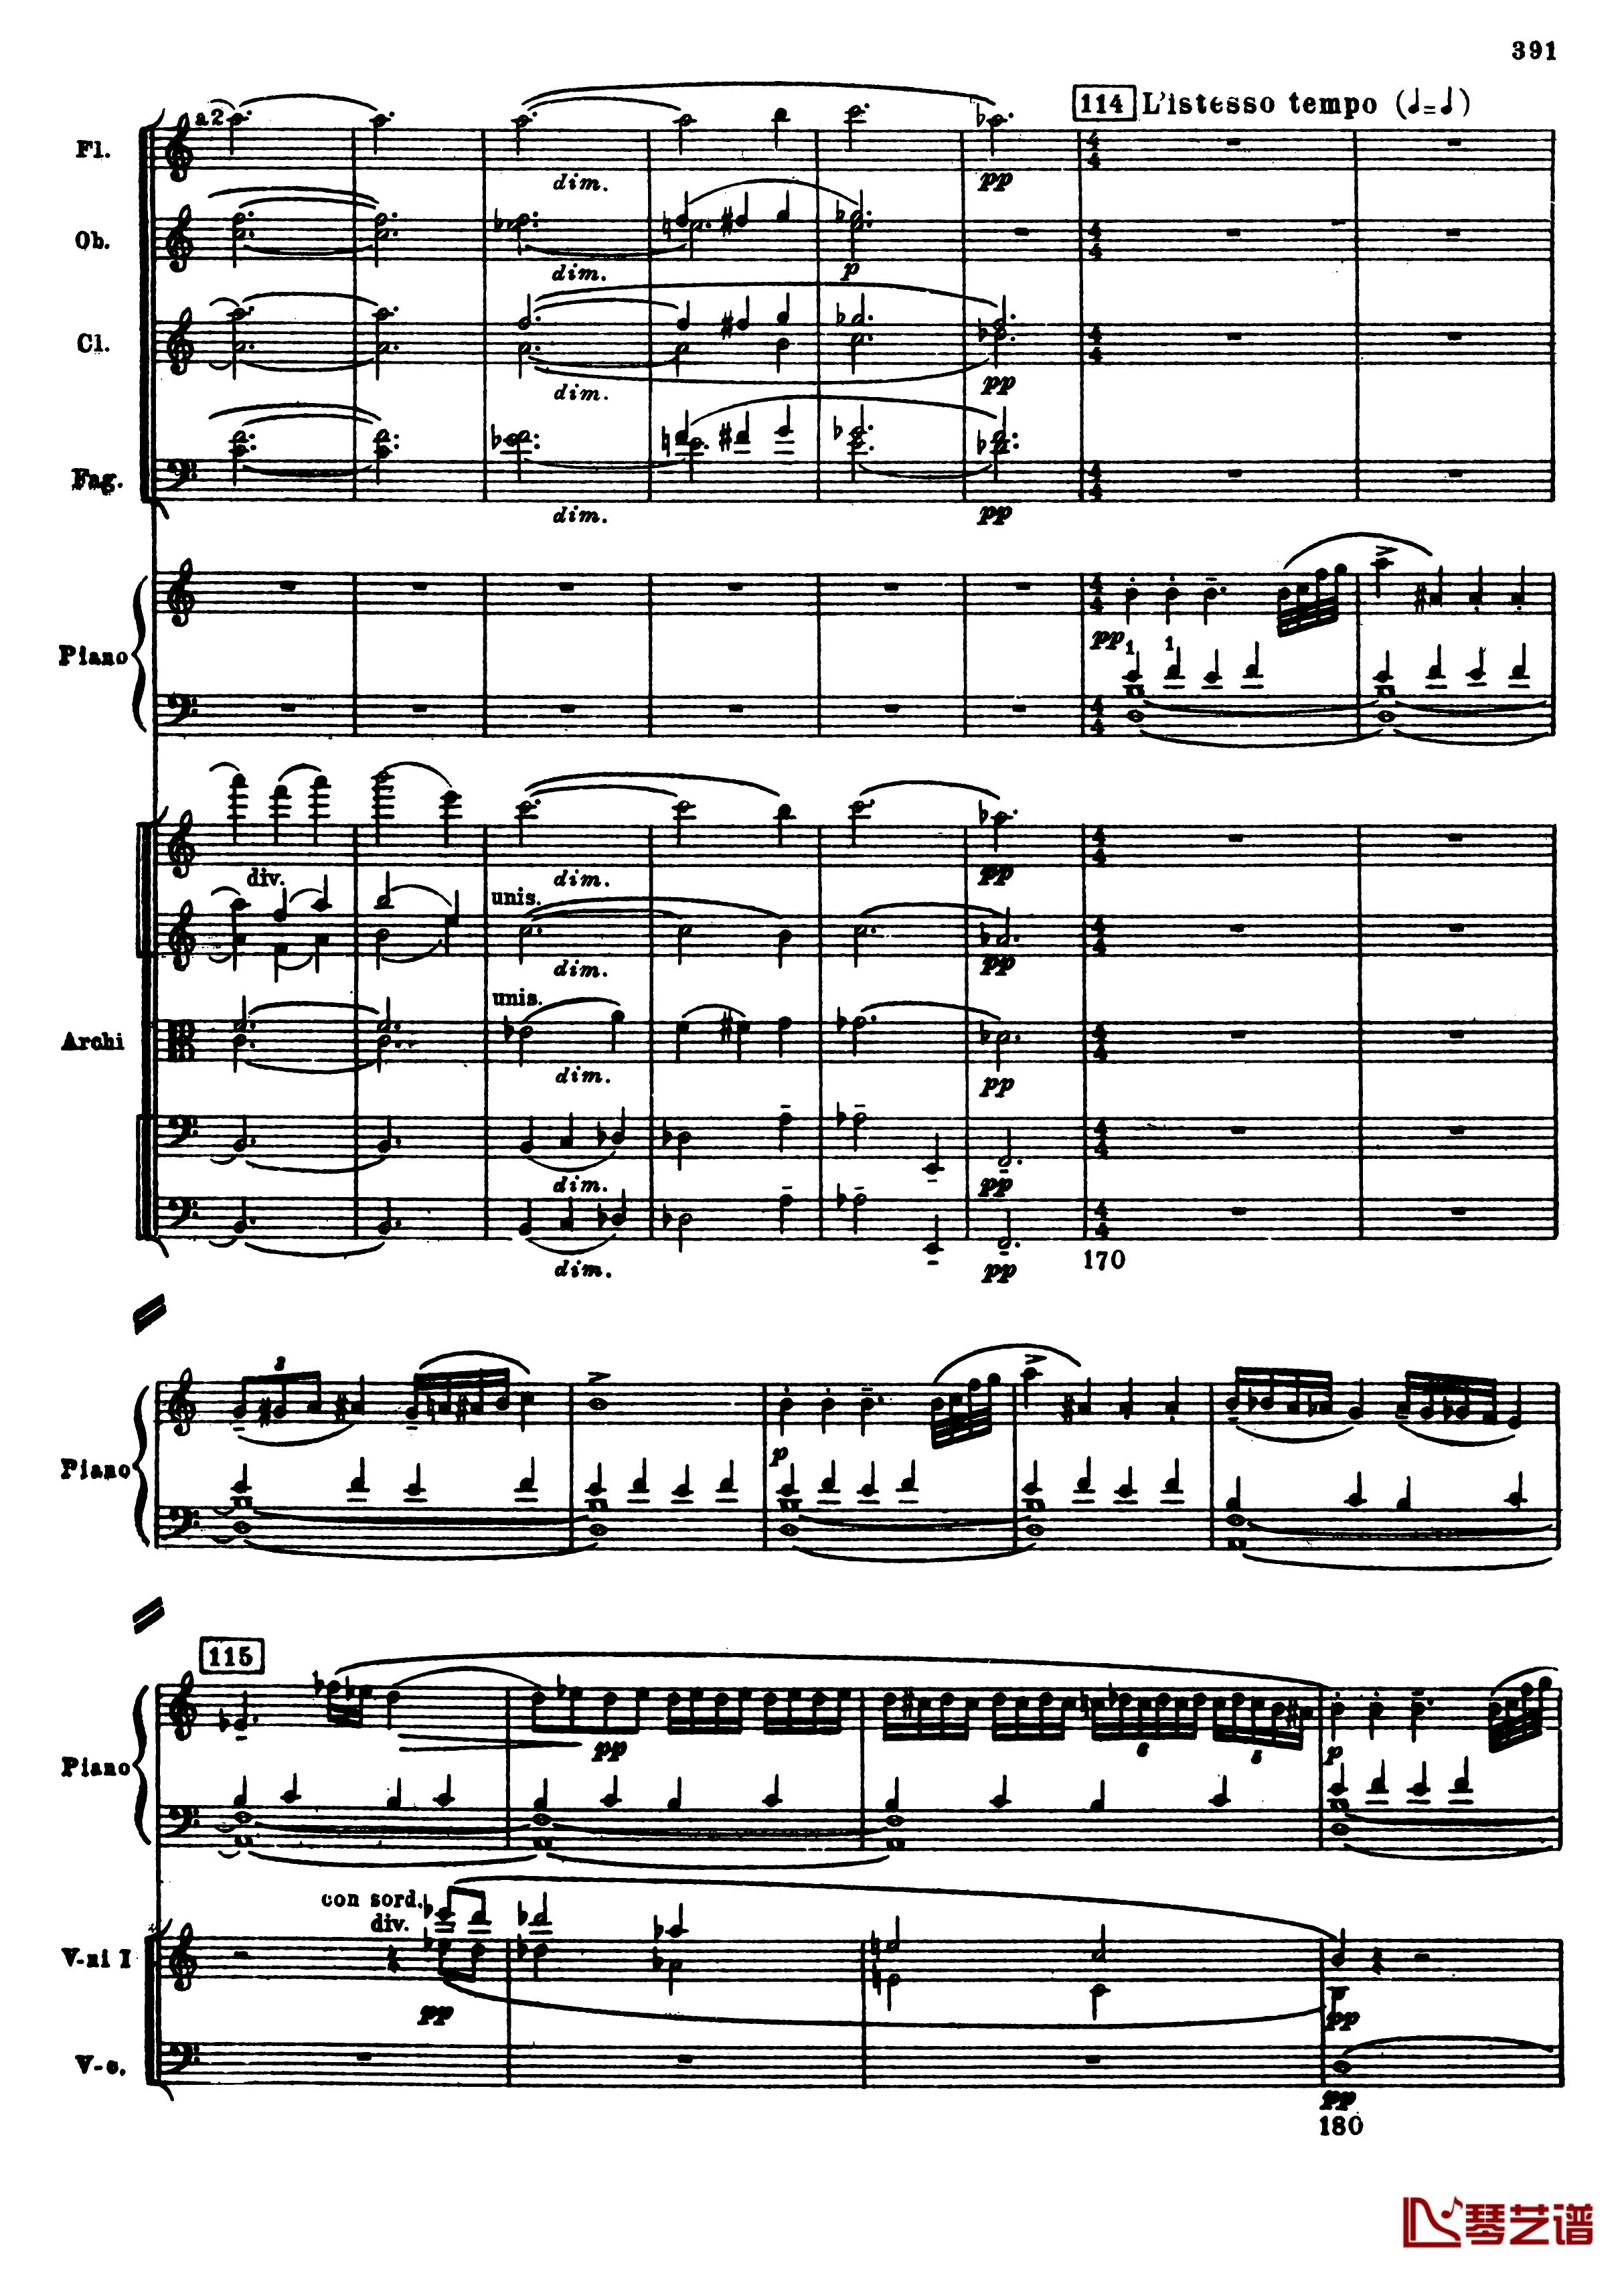 普罗科菲耶夫第三钢琴协奏曲钢琴谱-总谱-普罗科非耶夫123